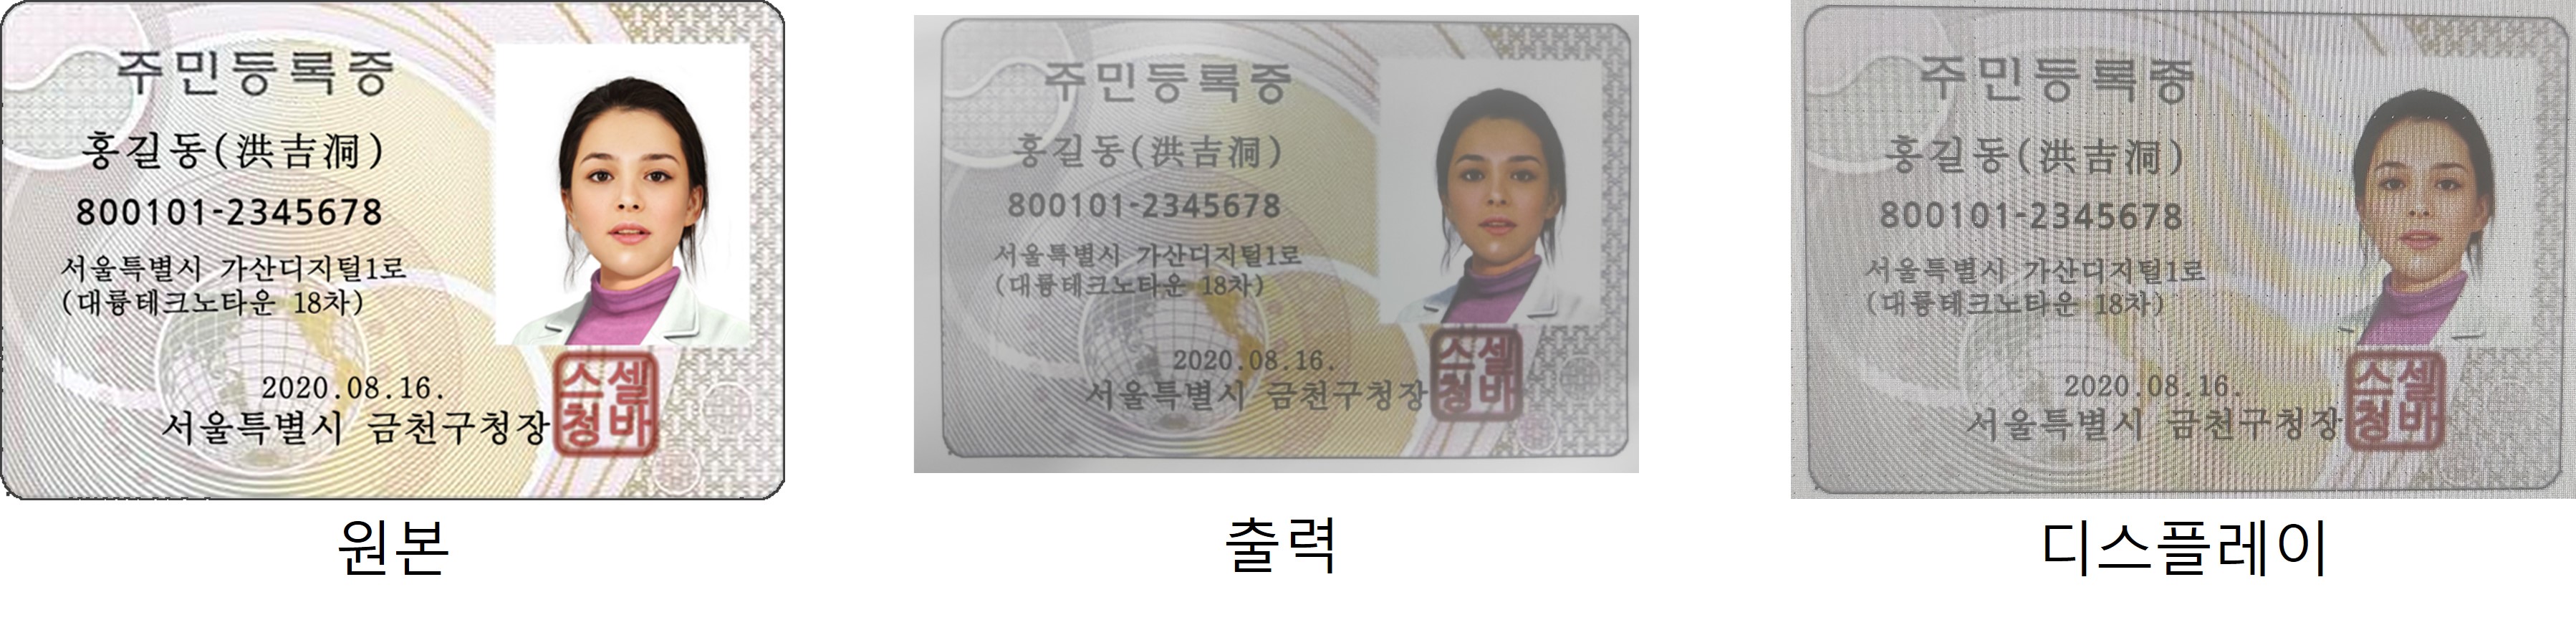 fake_idcard